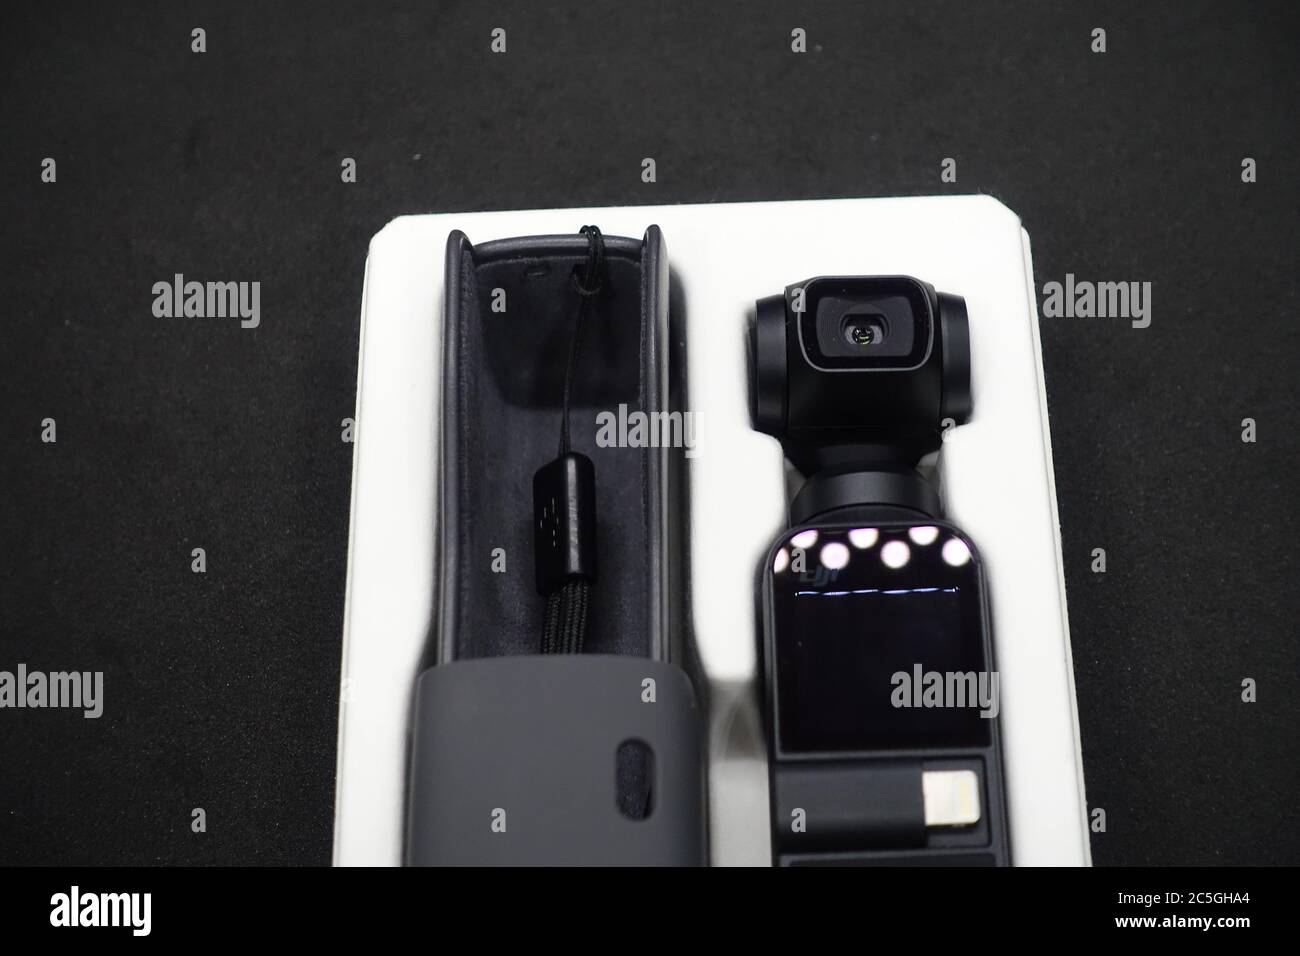 DJI Osmo Pocket, una cámara de bolsillo tipo gimbal que puede grabar fotos  de 12 gpm y vídeo en resolución 4K, el compañero perfecto para viajar  Fotografía de stock - Alamy